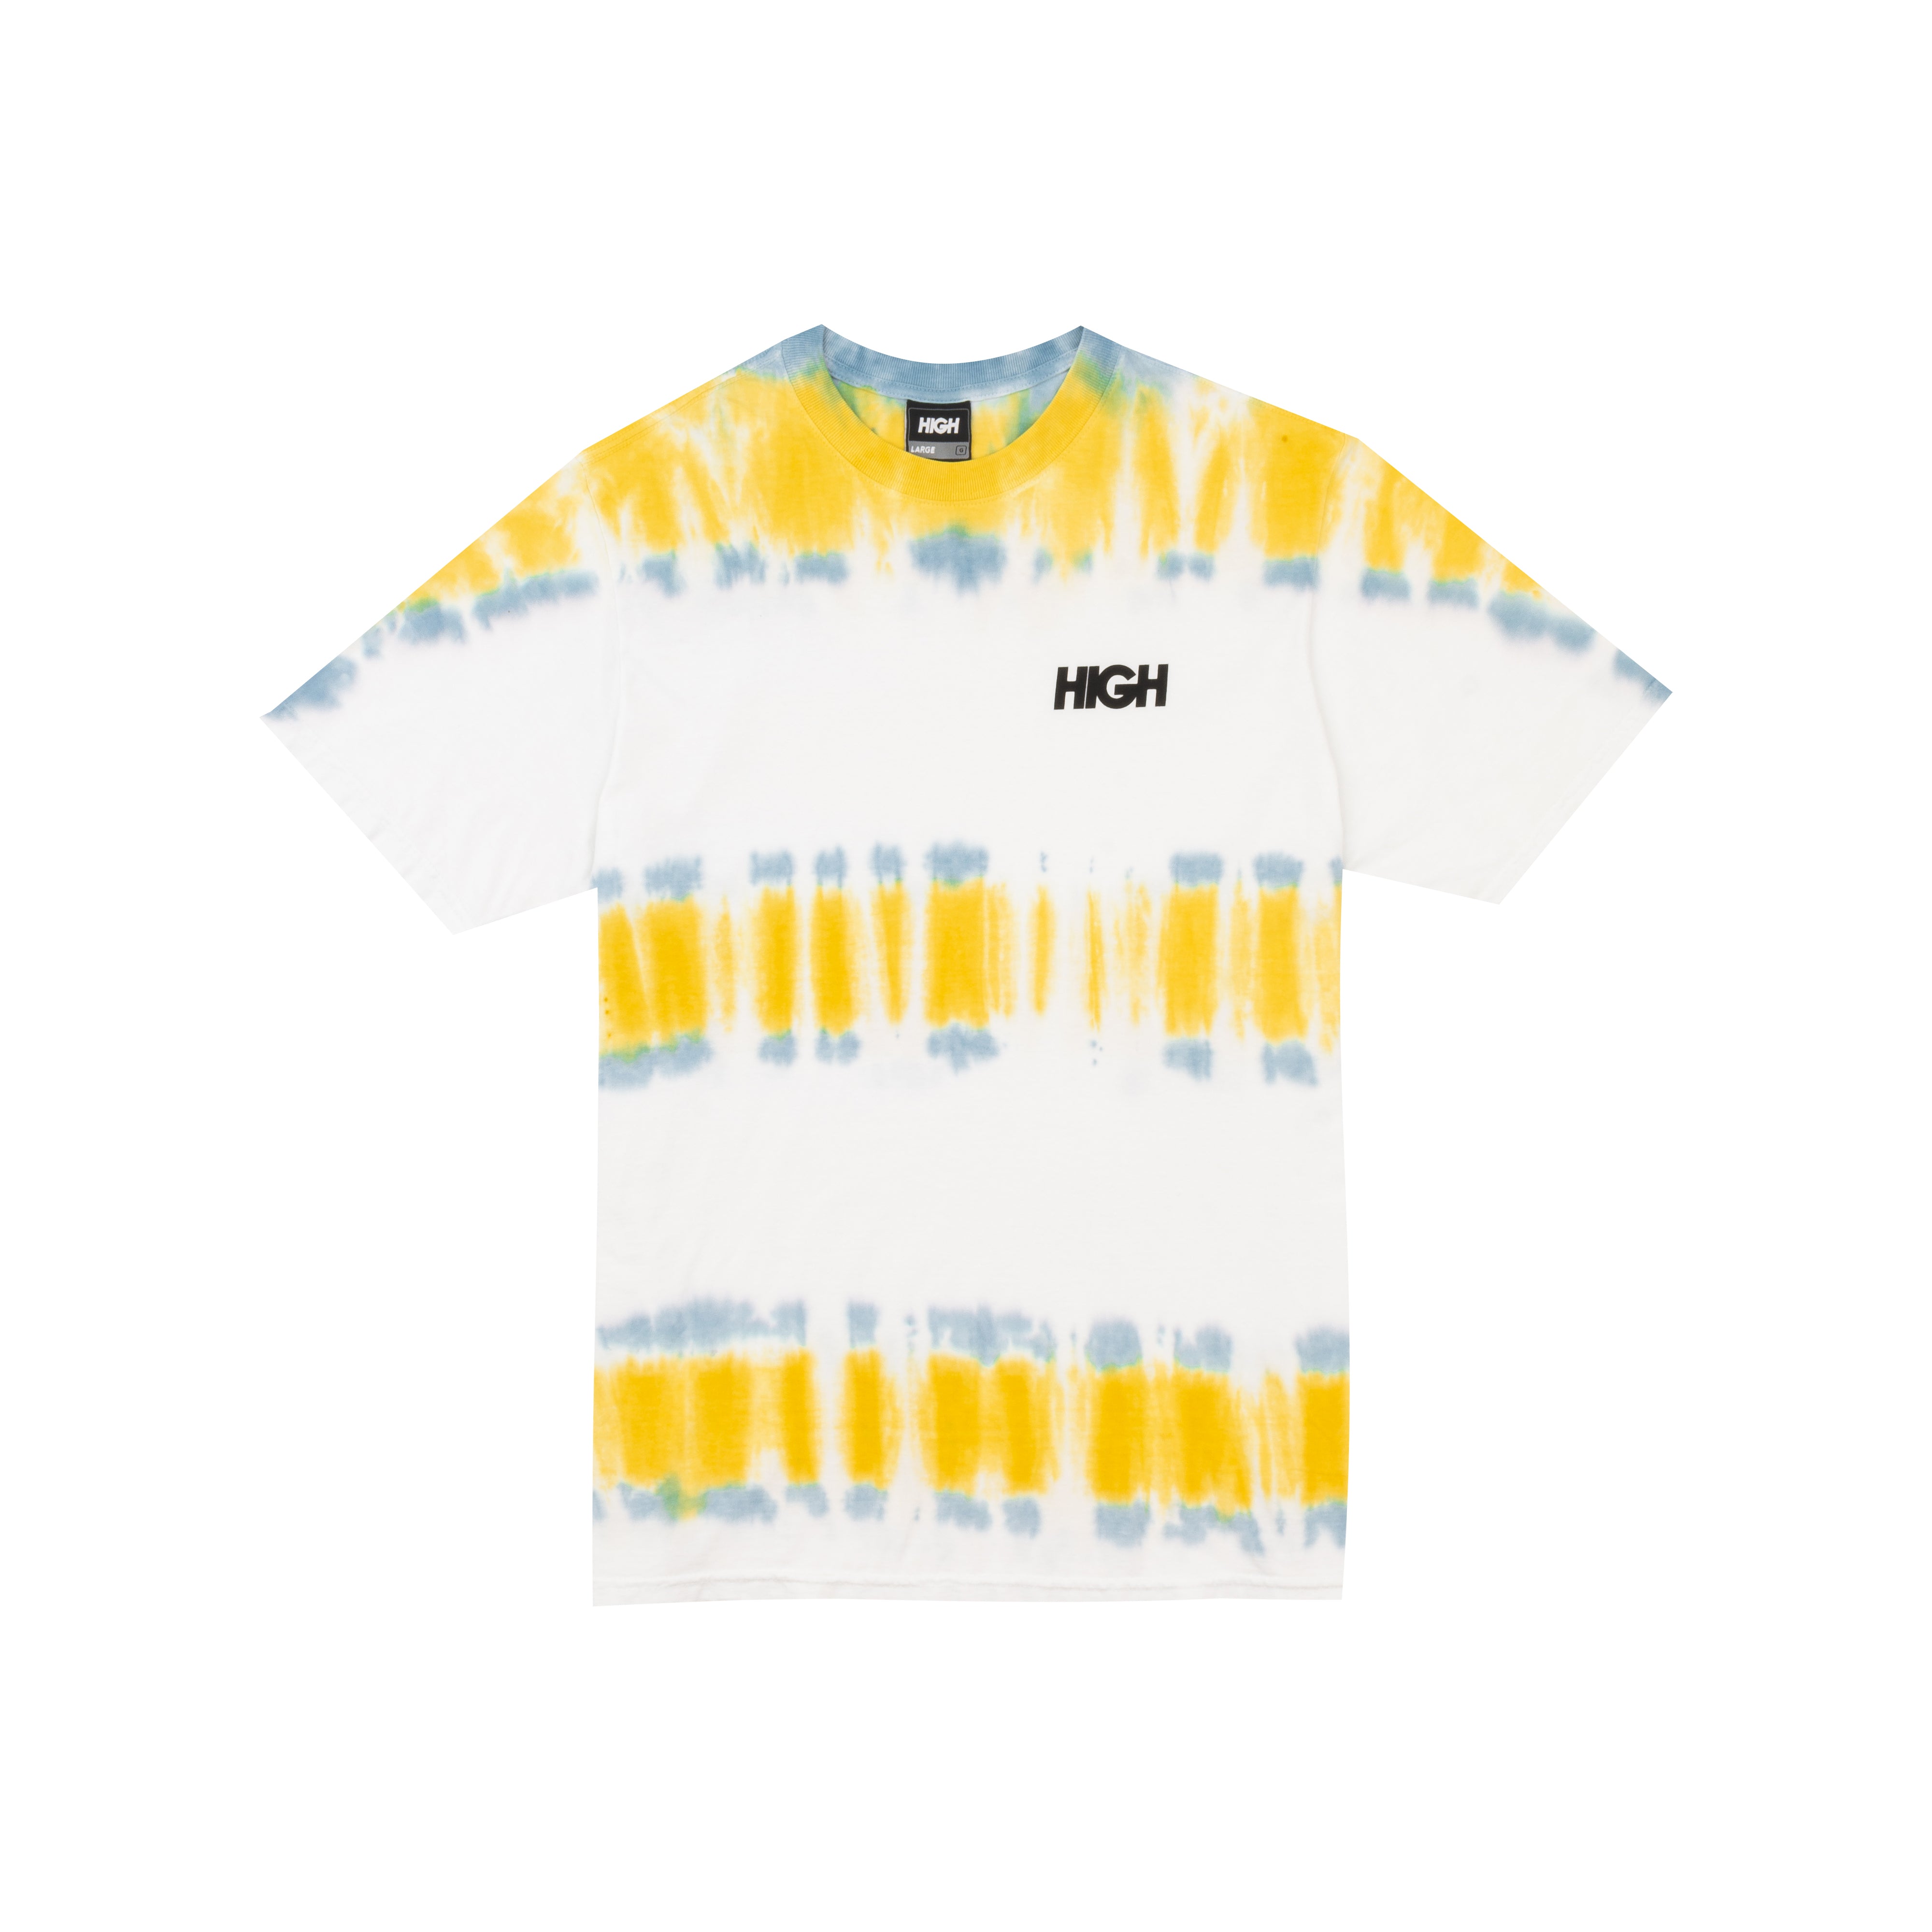 HIGH - Camiseta Dyed Kidz "White"